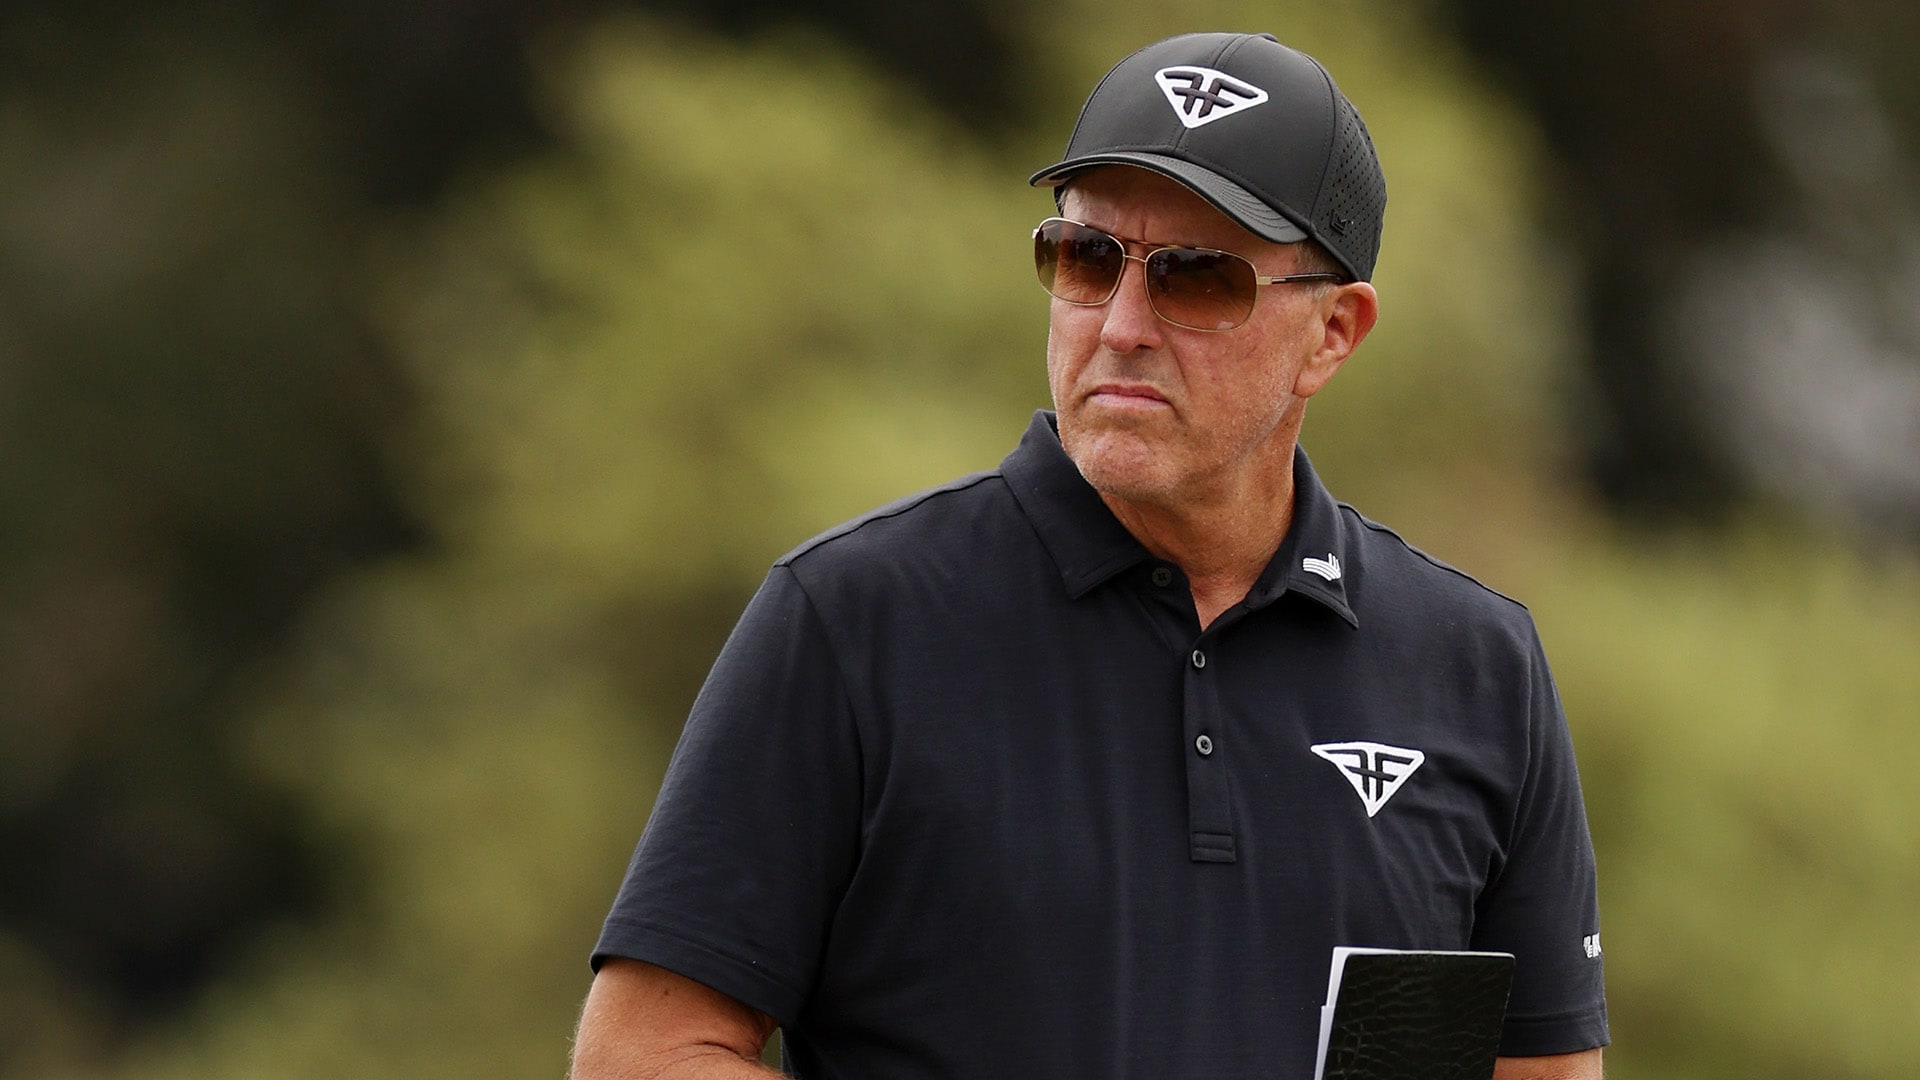 Phil Mickelson Speaks on PGA Tour-Saudi Deal: ‘Very optimistic’